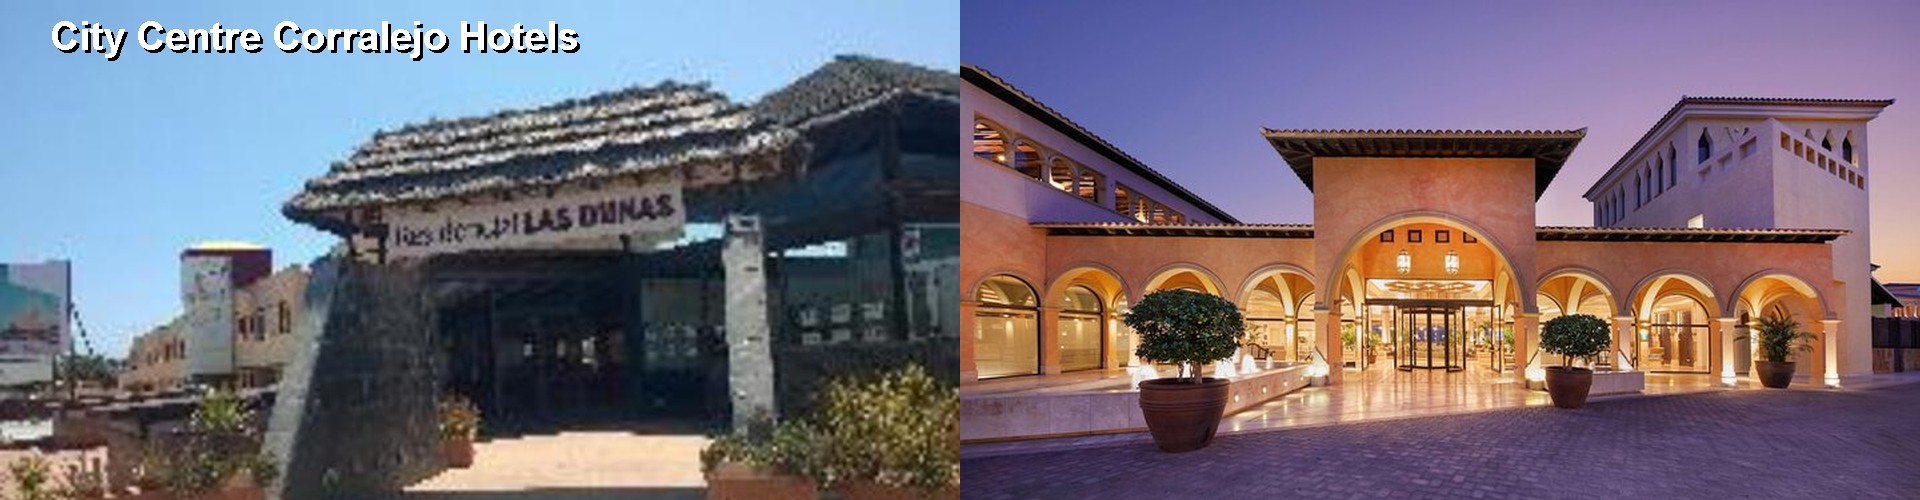 5 Best Hotels near City Centre Corralejo